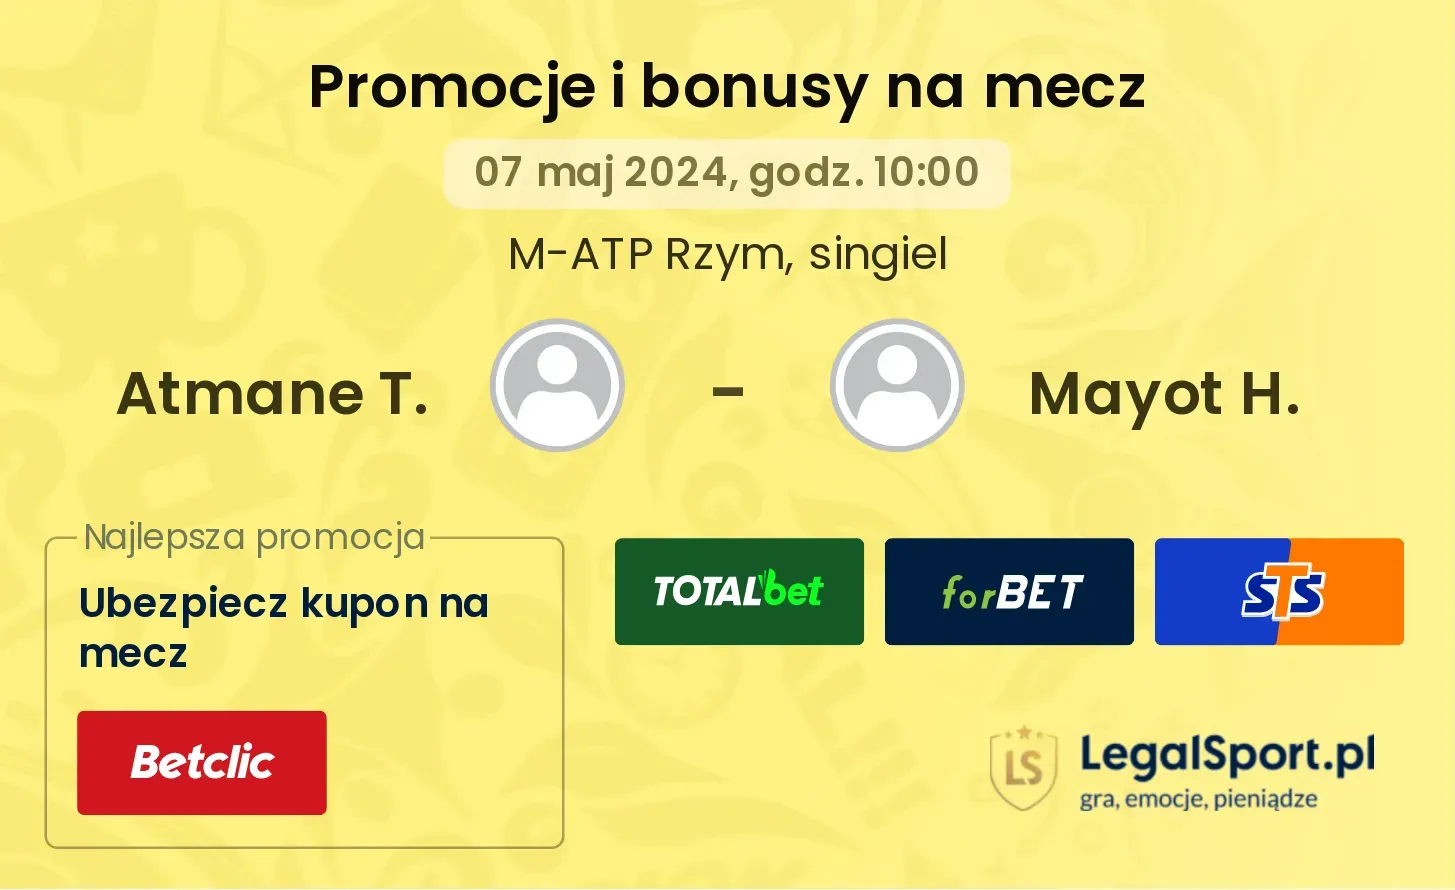 Atmane T. - Mayot H. promocje bonusy na mecz